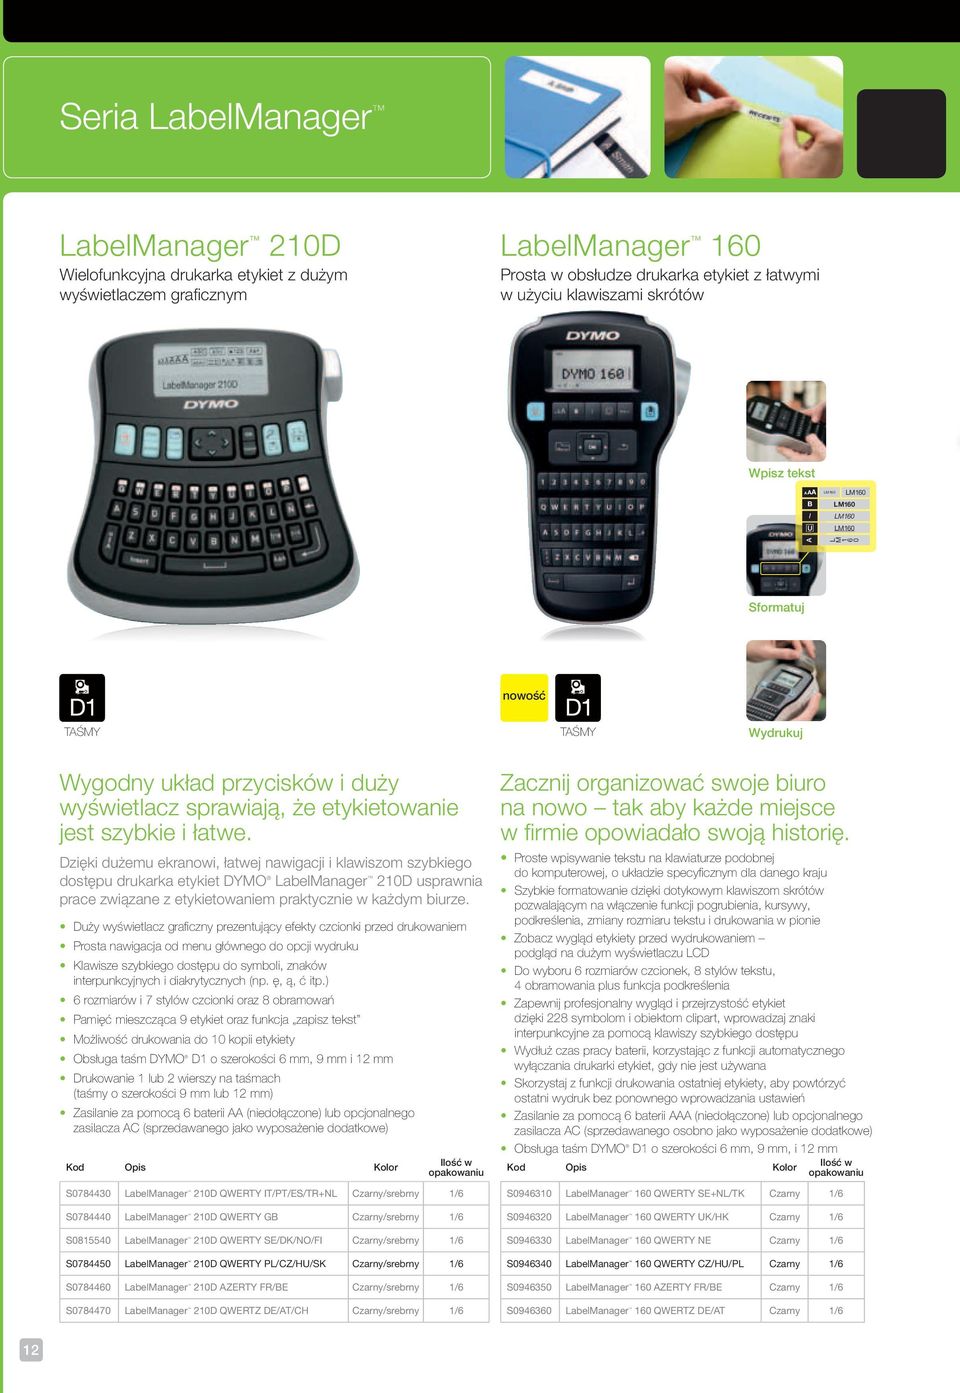 łatwe. Dzięki dużemu ekranowi, łatwej nawigacji i klawiszom szybkiego dostępu drukarka etykiet DYMO LabelManager 210D usprawnia prace związane z etykietowaniem praktycznie w każdym biurze.